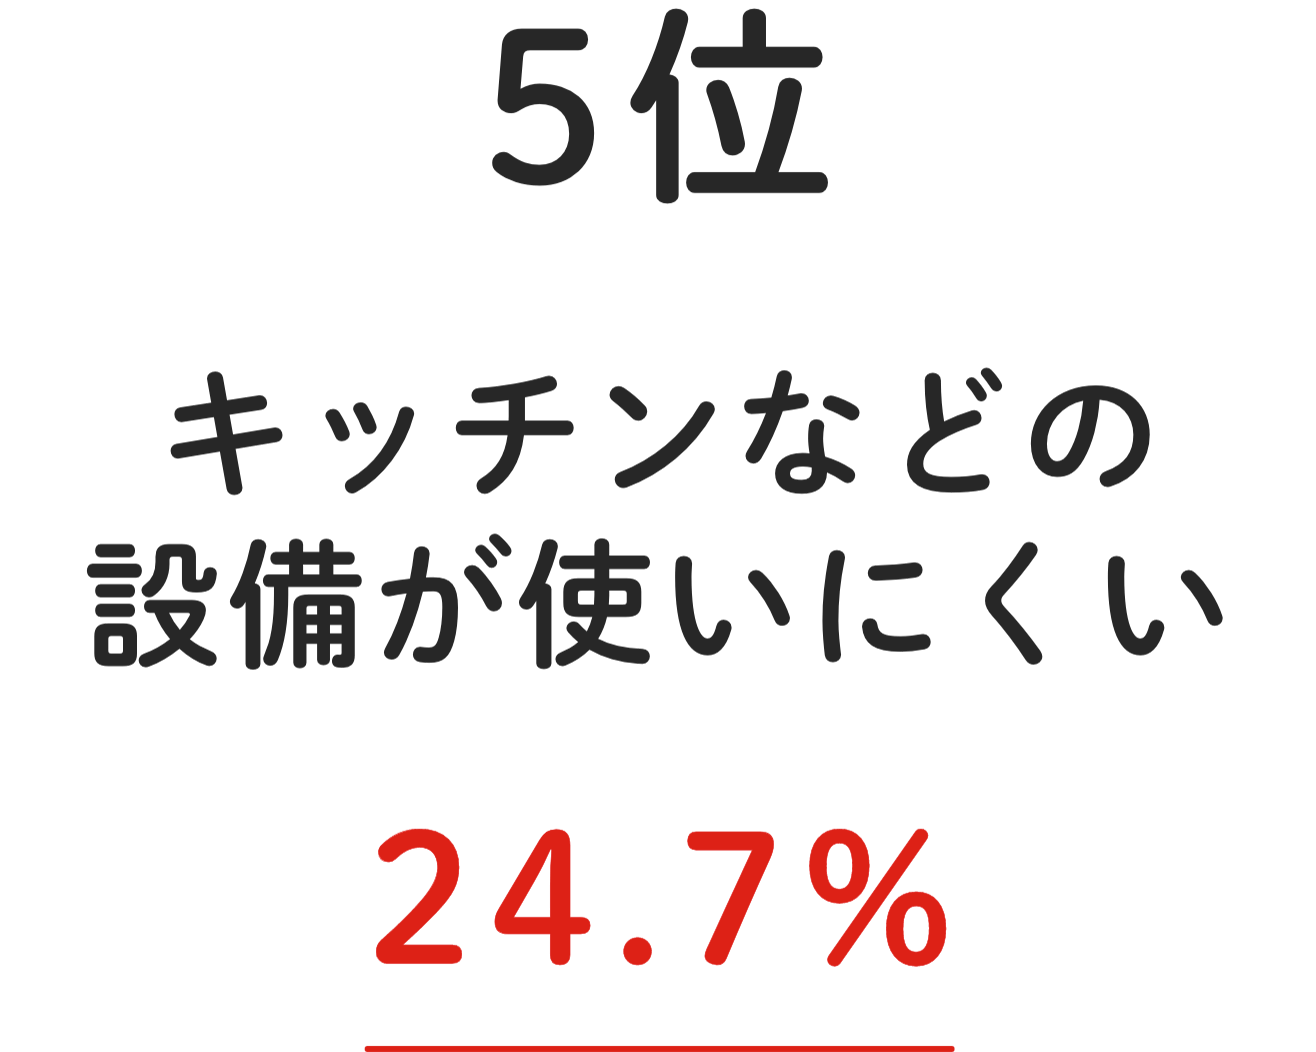 5位 キッチンなどの設備が使いにくい 24.7%